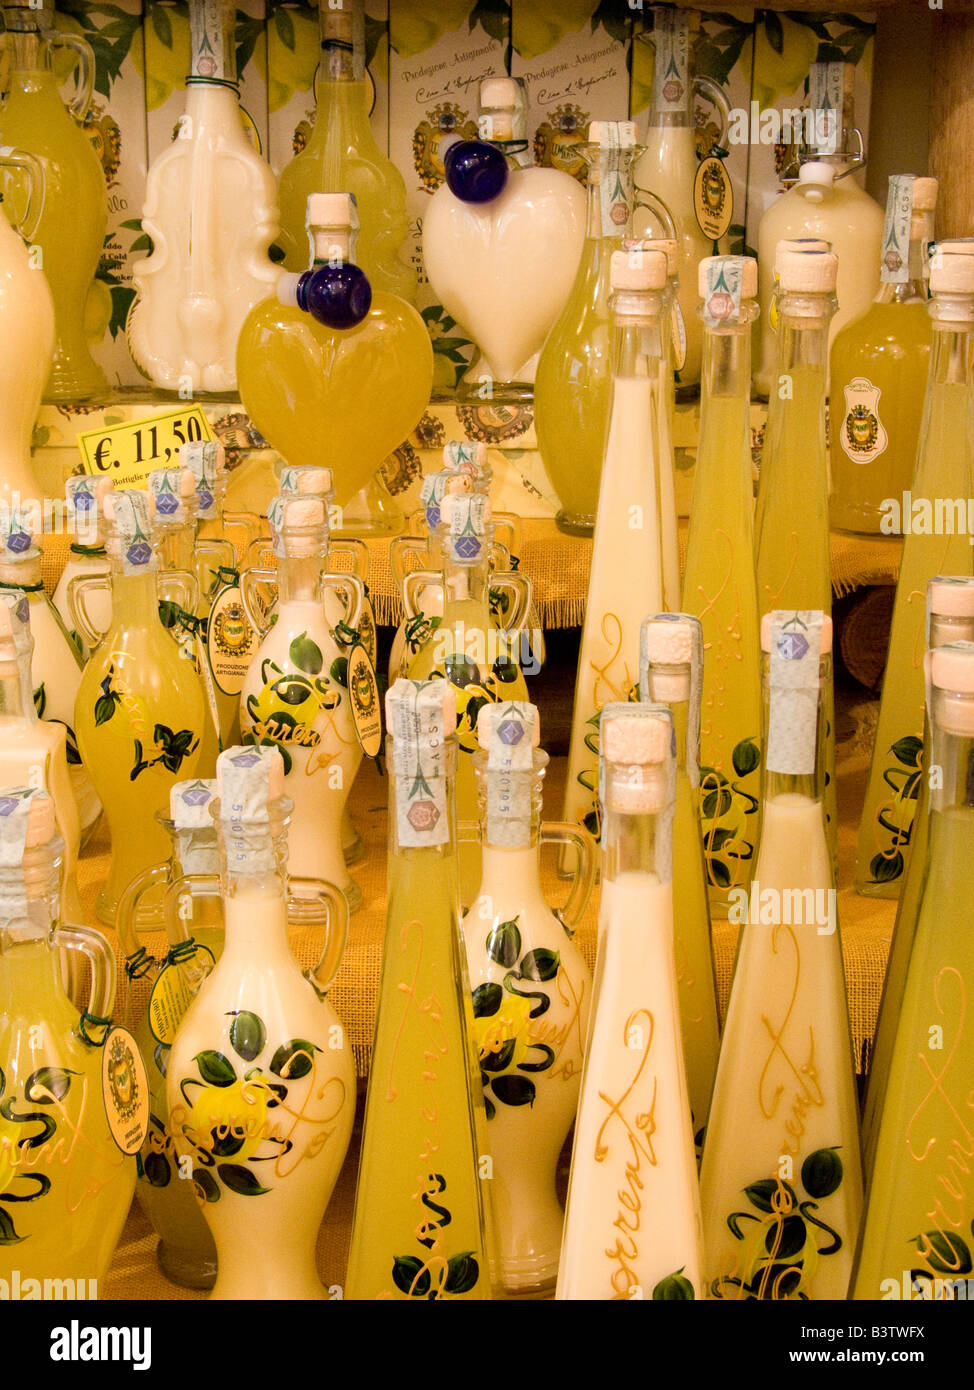 L'Europe, Italie, Sorrento. L'affichage des bouteilles de limoncello, une liqueur de citron faite dans le sud de l'Italie. Banque D'Images